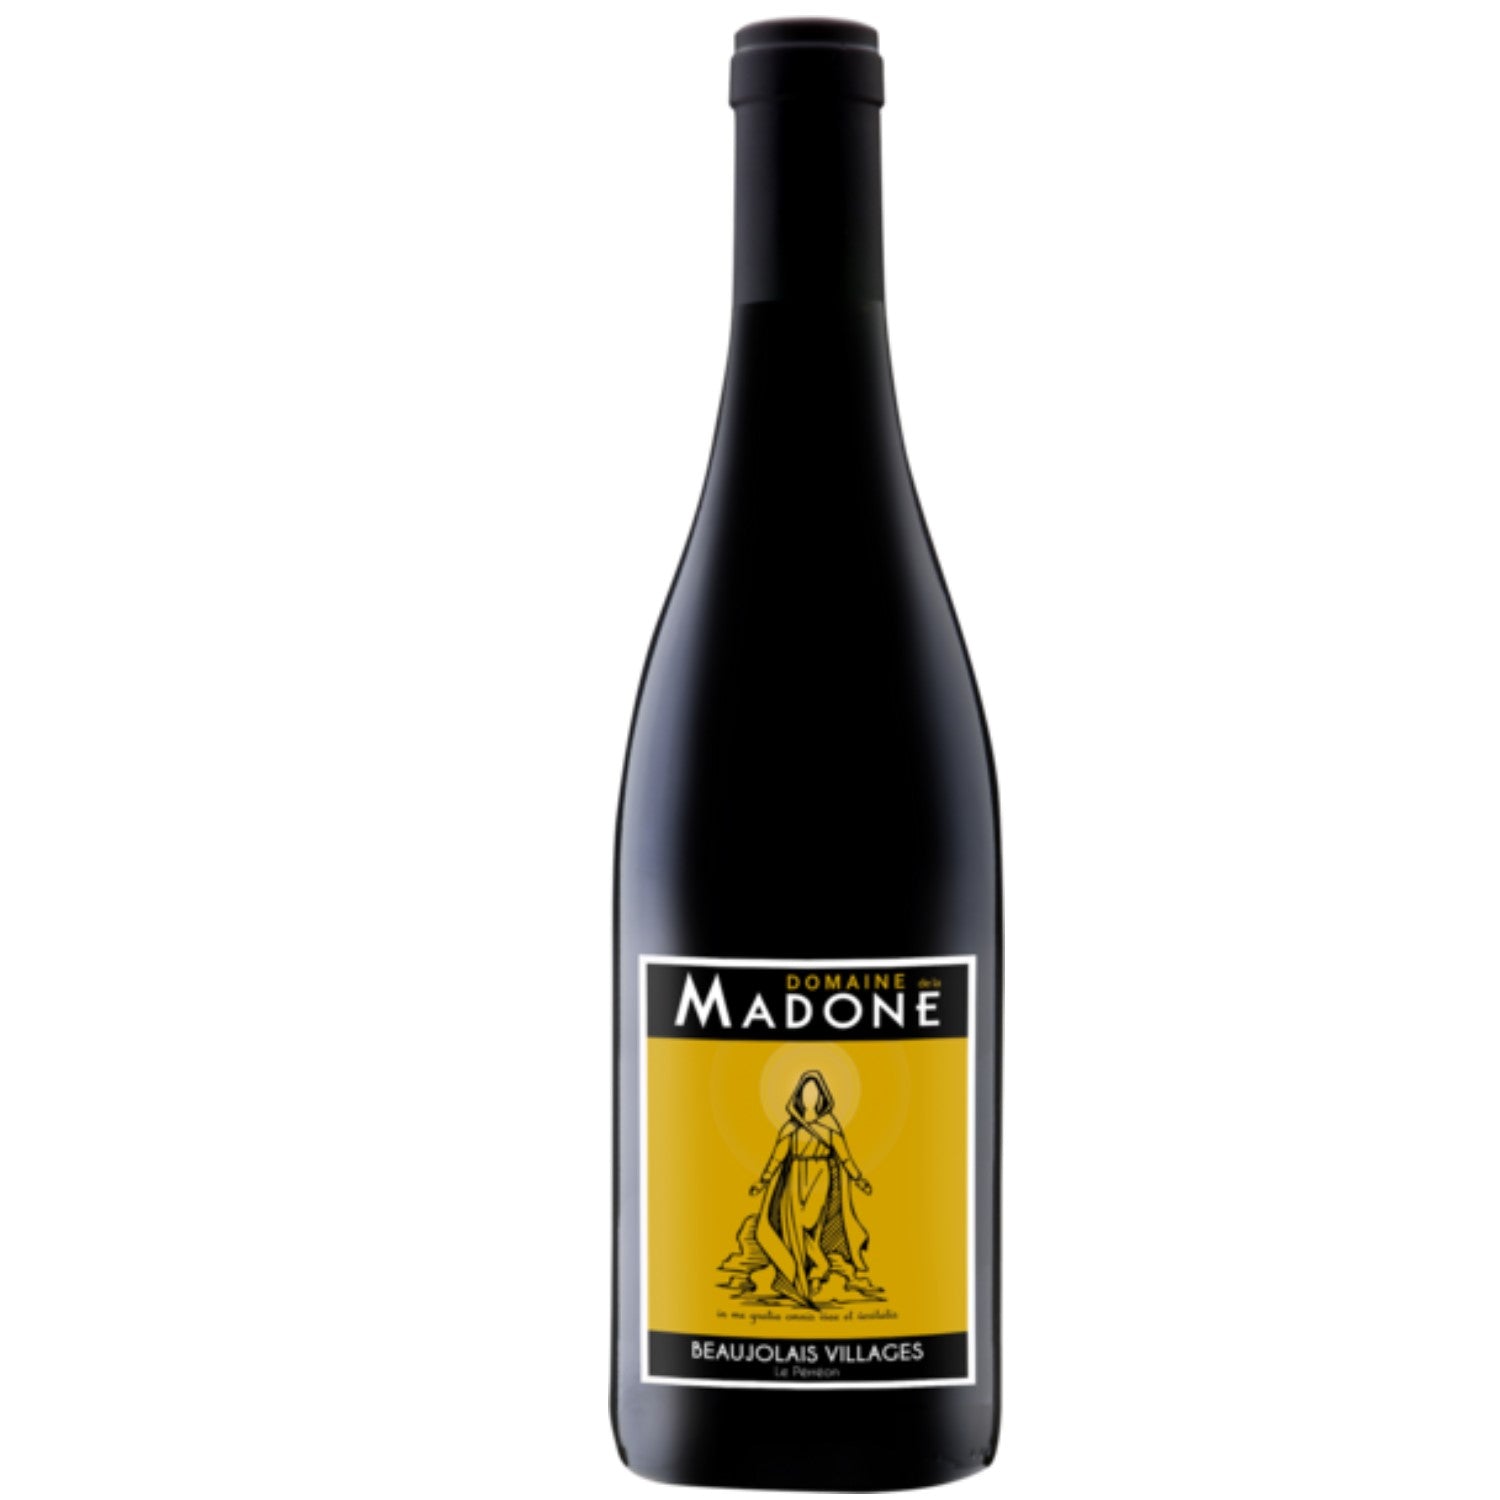 Domaine de la Madone Le Pérréon Beaujolais Villages Rotwein Wein trocken AOP Frankreich (12 x 0.75l) - Versanel -